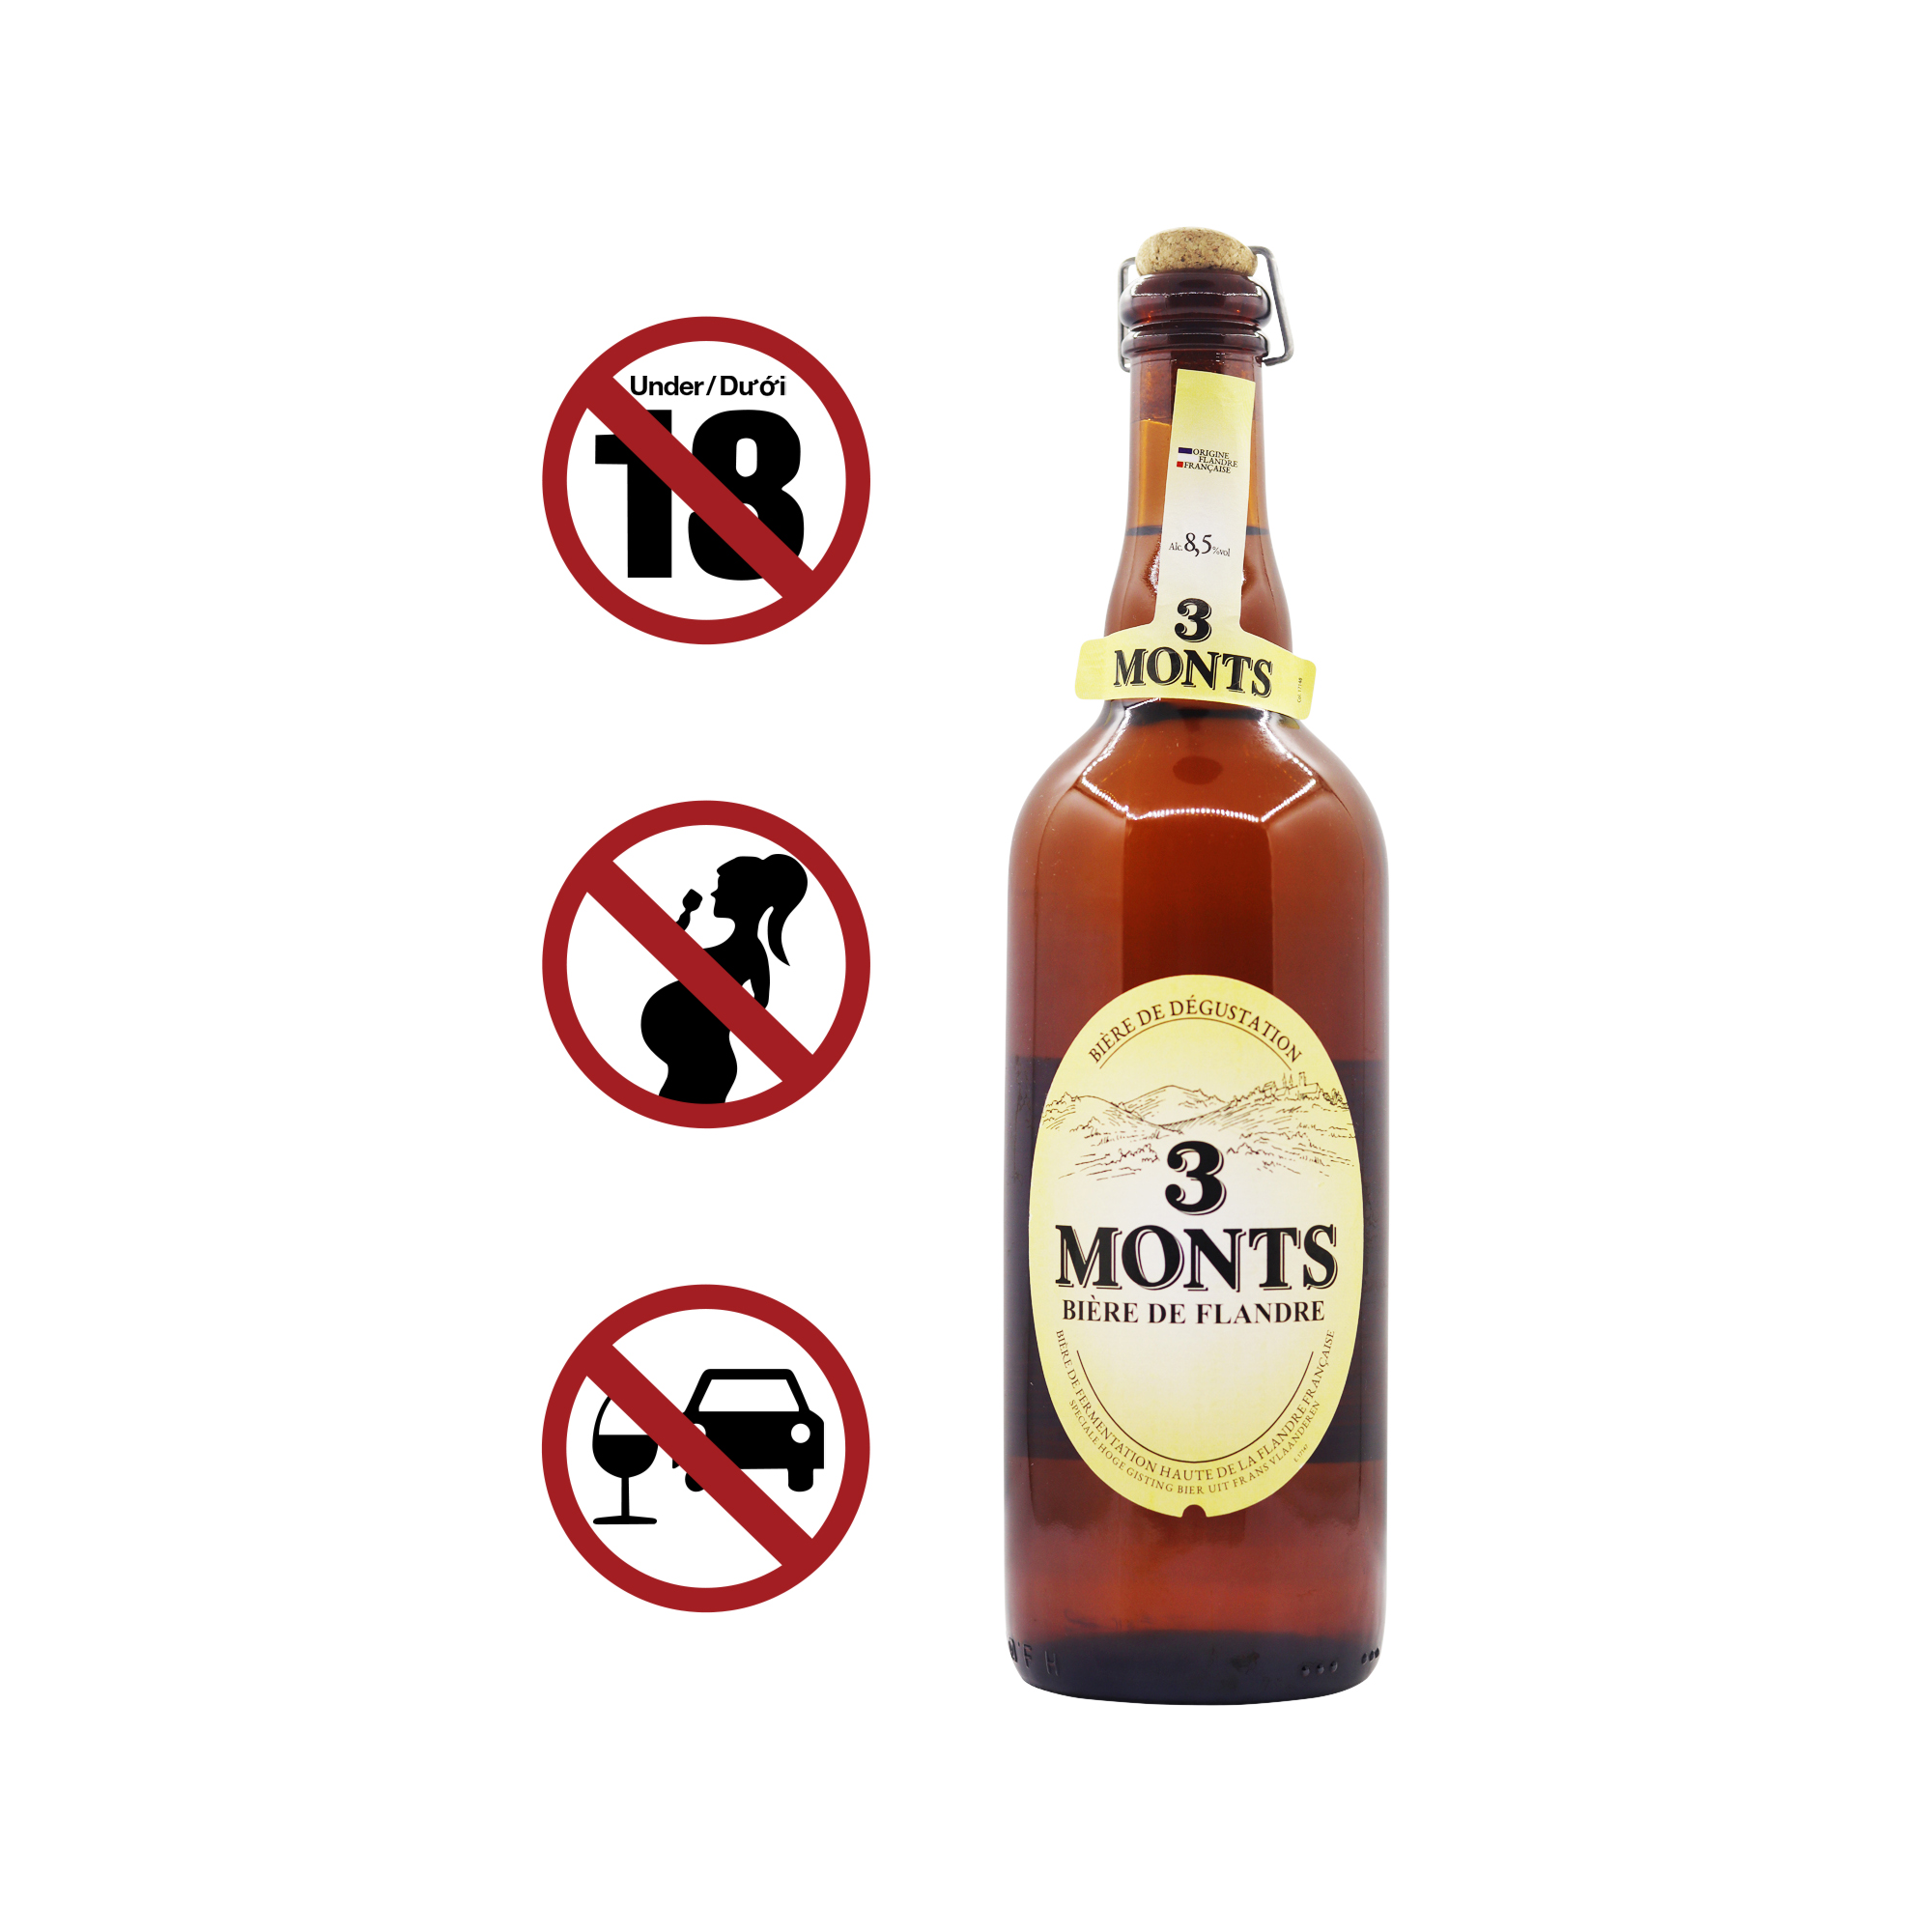 3 Monts Beer 8.5% Bottle (750ml)